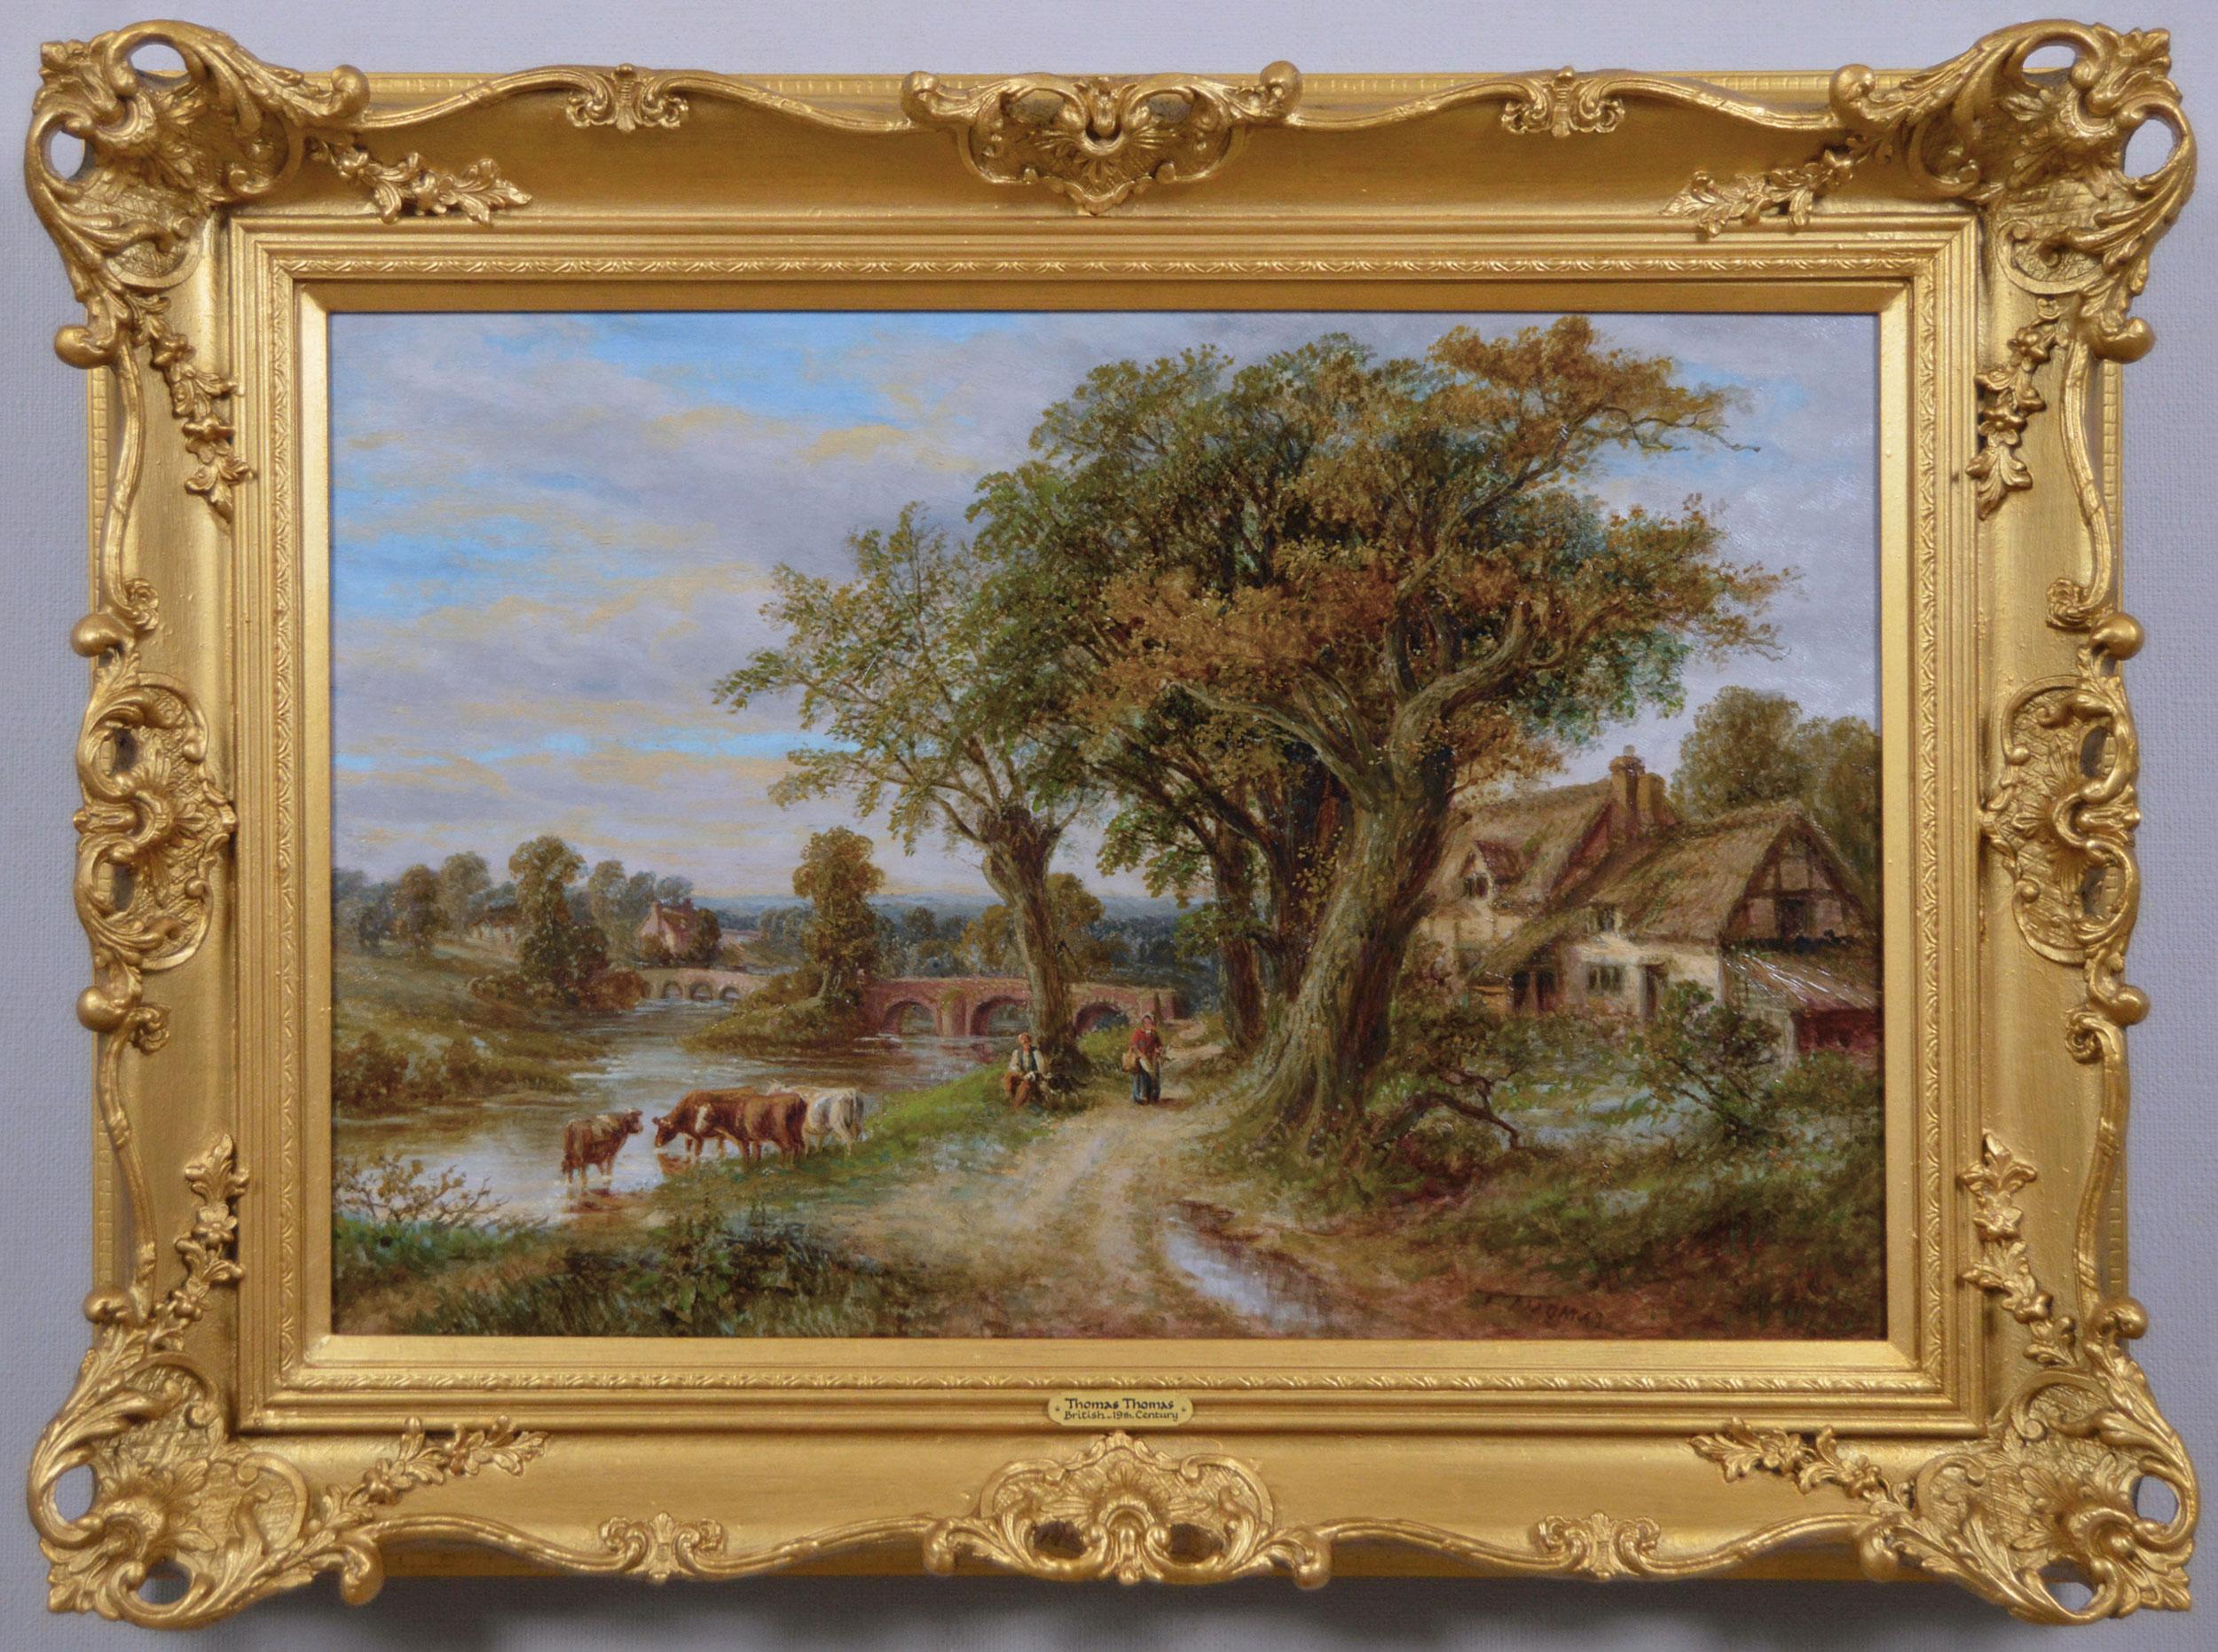 Landscape Painting Thomas Thomas - Peinture à l'huile de paysage du 19e siècle représentant des personnages avec du bétail près d'une rivière de campagne